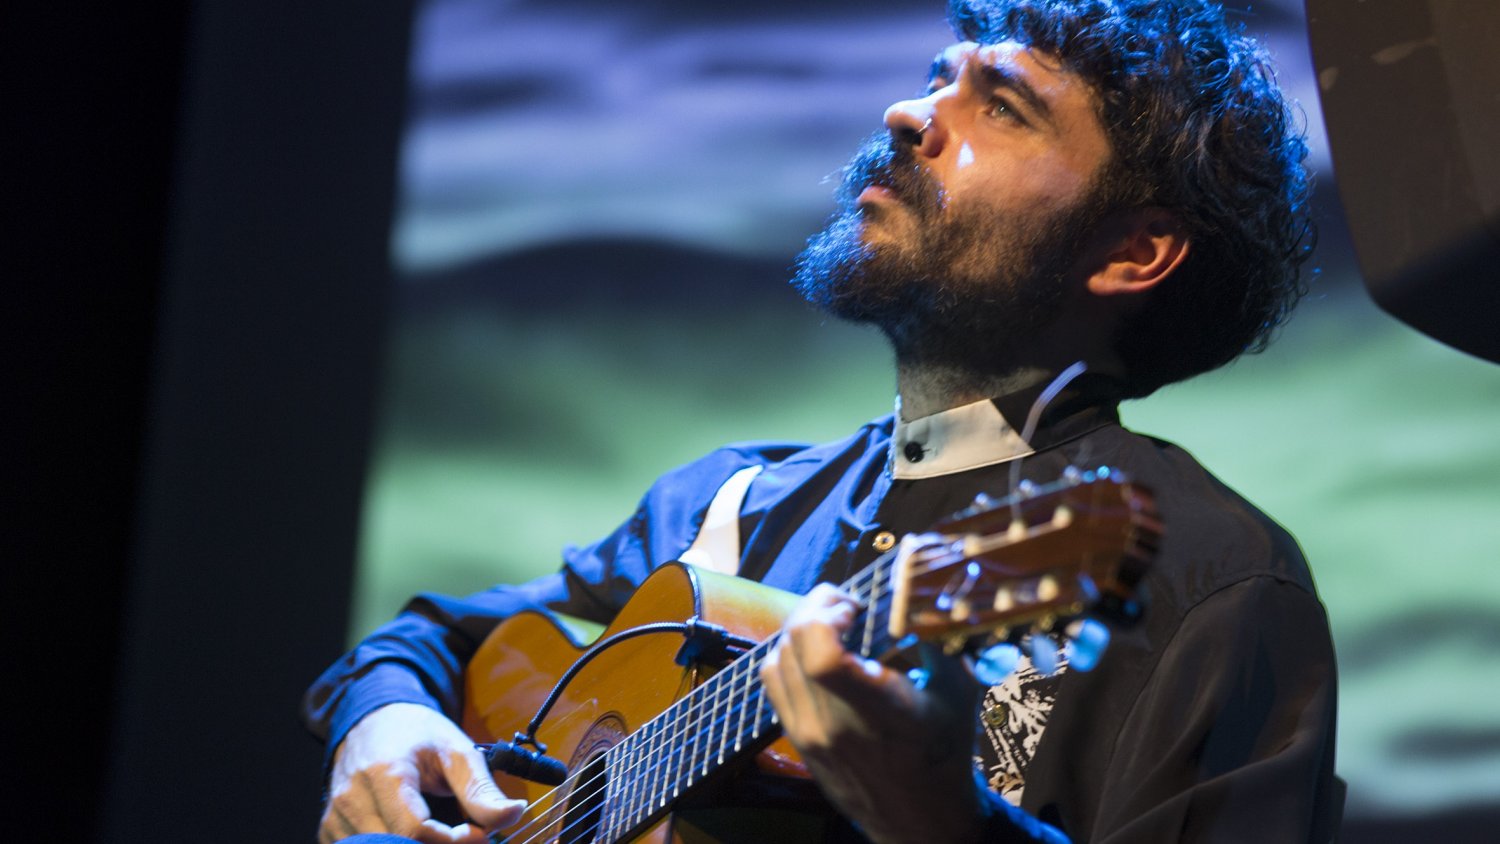 El joven compositor y guitarrista Joselito Acedo llega este jueves al Museo de la Aduana de Málaga